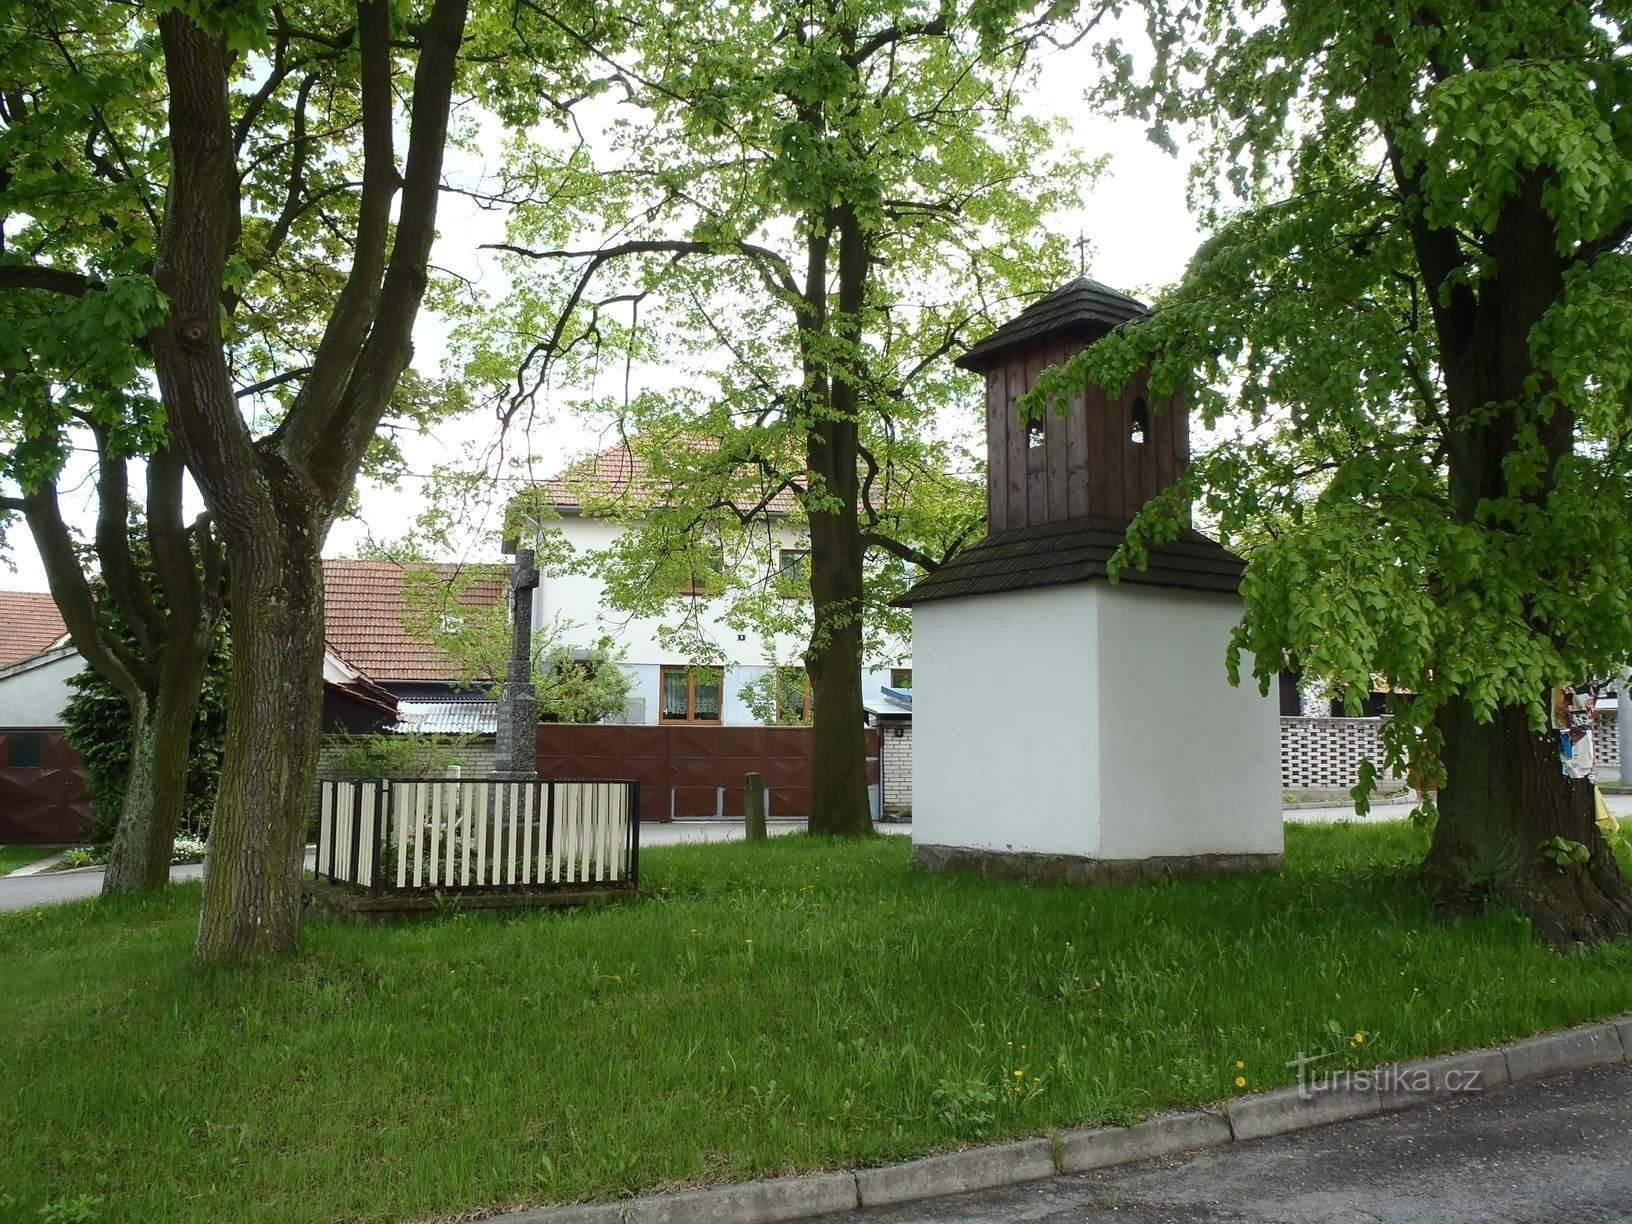 Kapelle in Sviny - 6.5.2012. August XNUMX